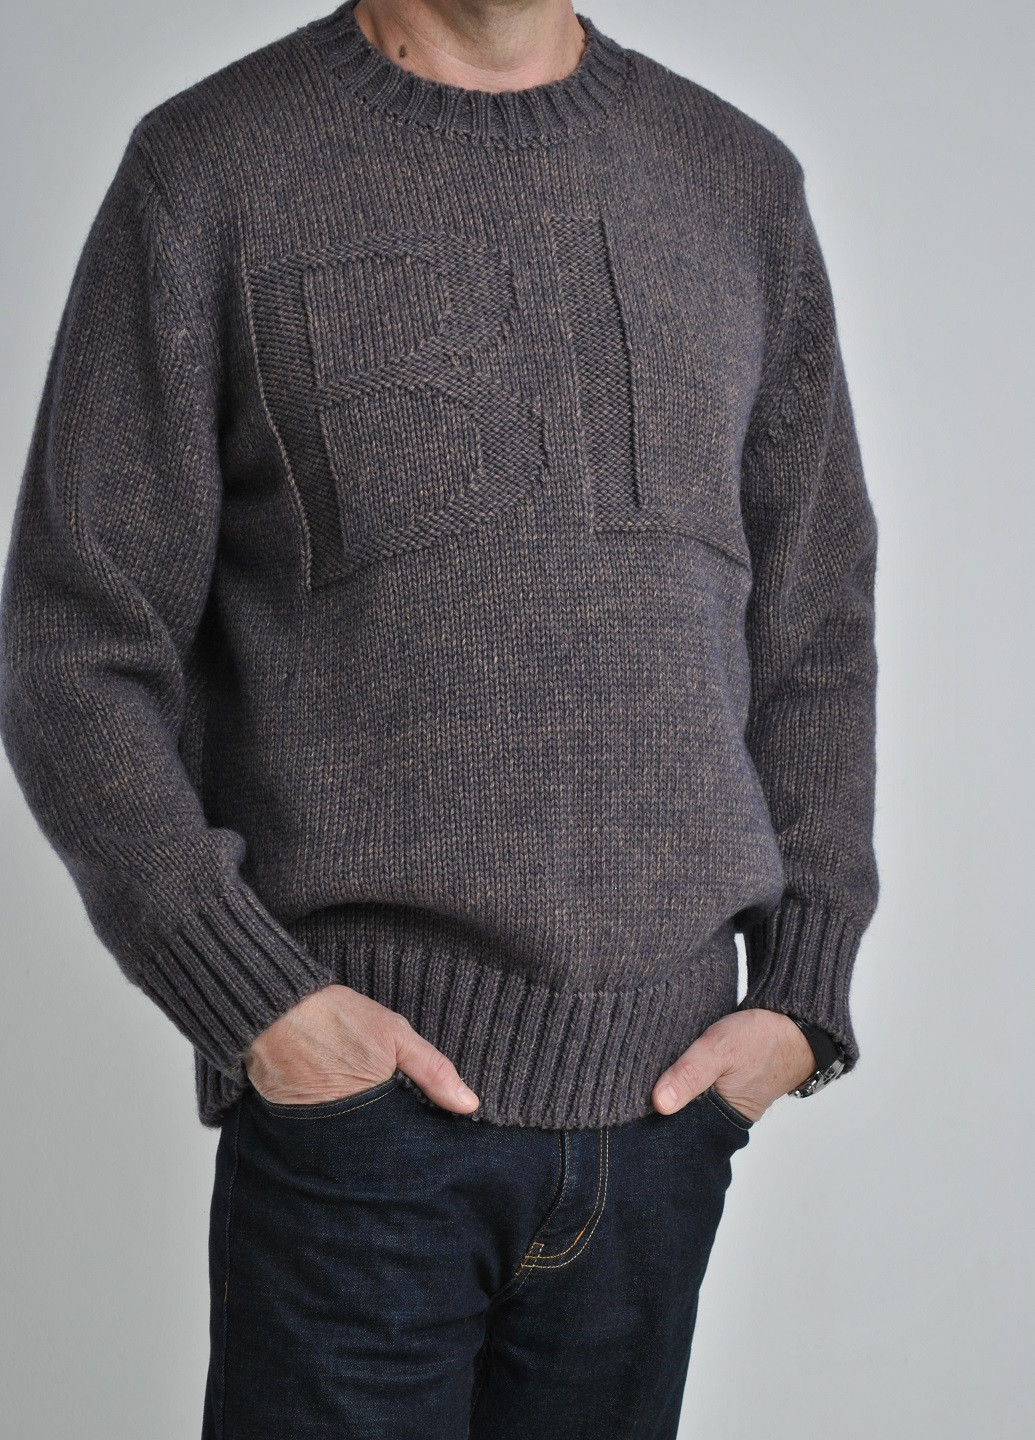 Комбинированный зимний свитер с буквами Berta Lucci